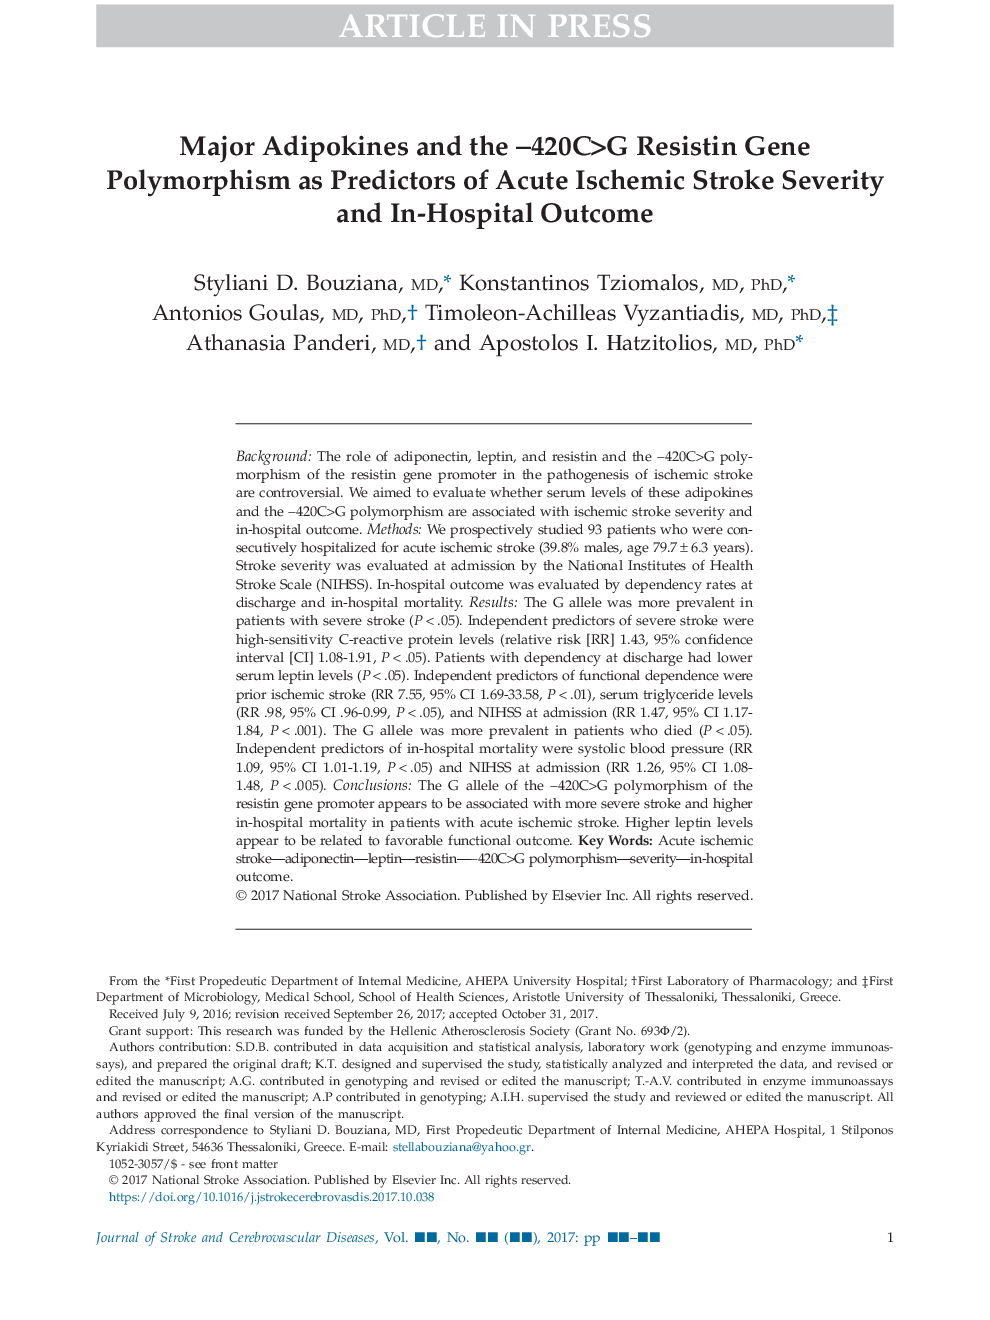 Major Adipokines and the â420C>G Resistin Gene Polymorphism as Predictors of Acute Ischemic Stroke Severity and In-Hospital Outcome